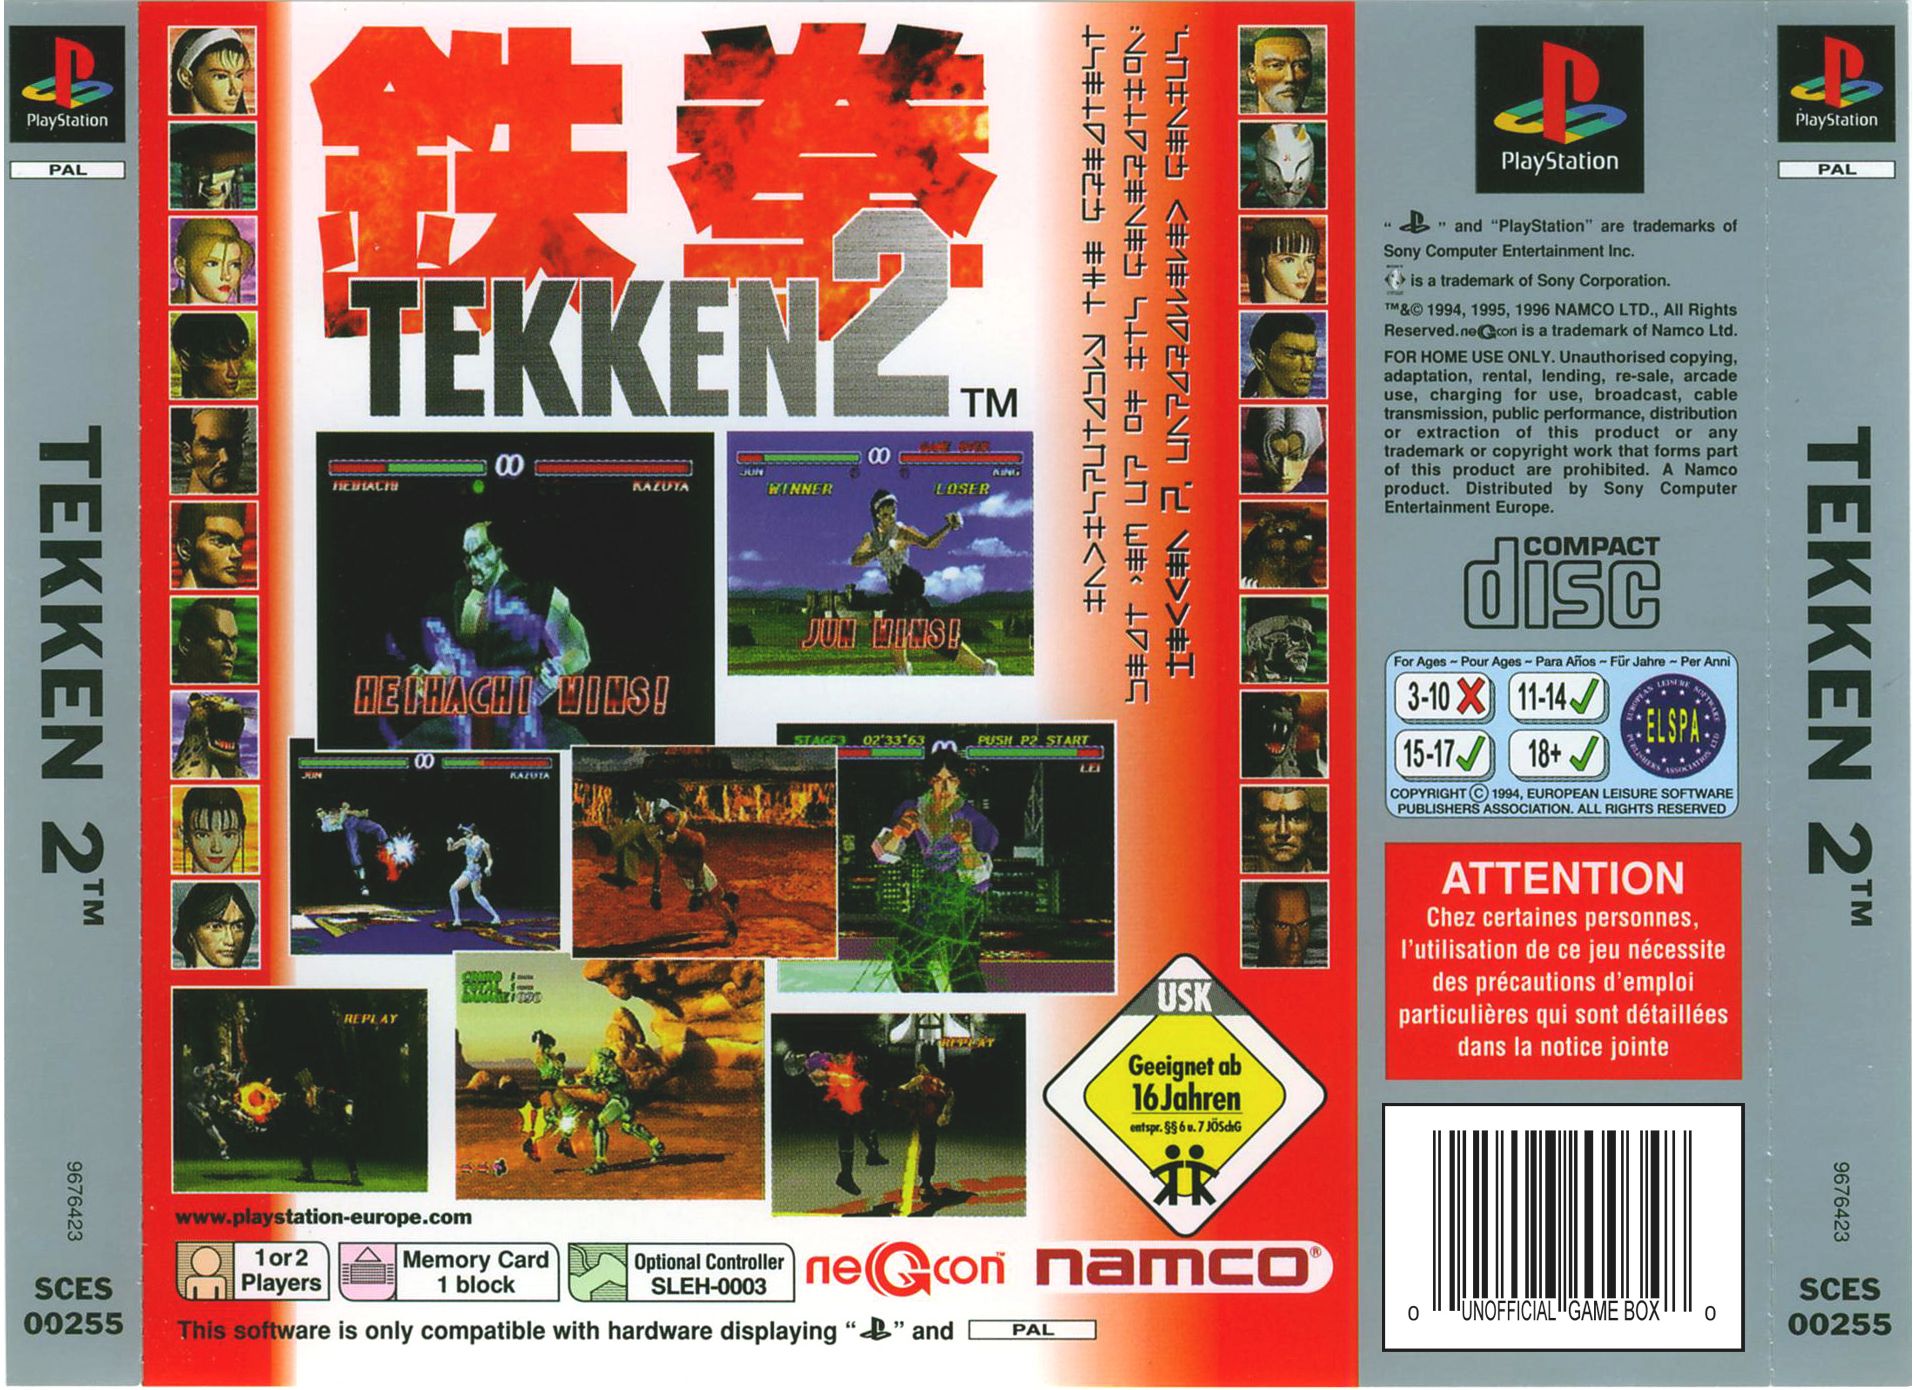 Tekken 2 PSX cover